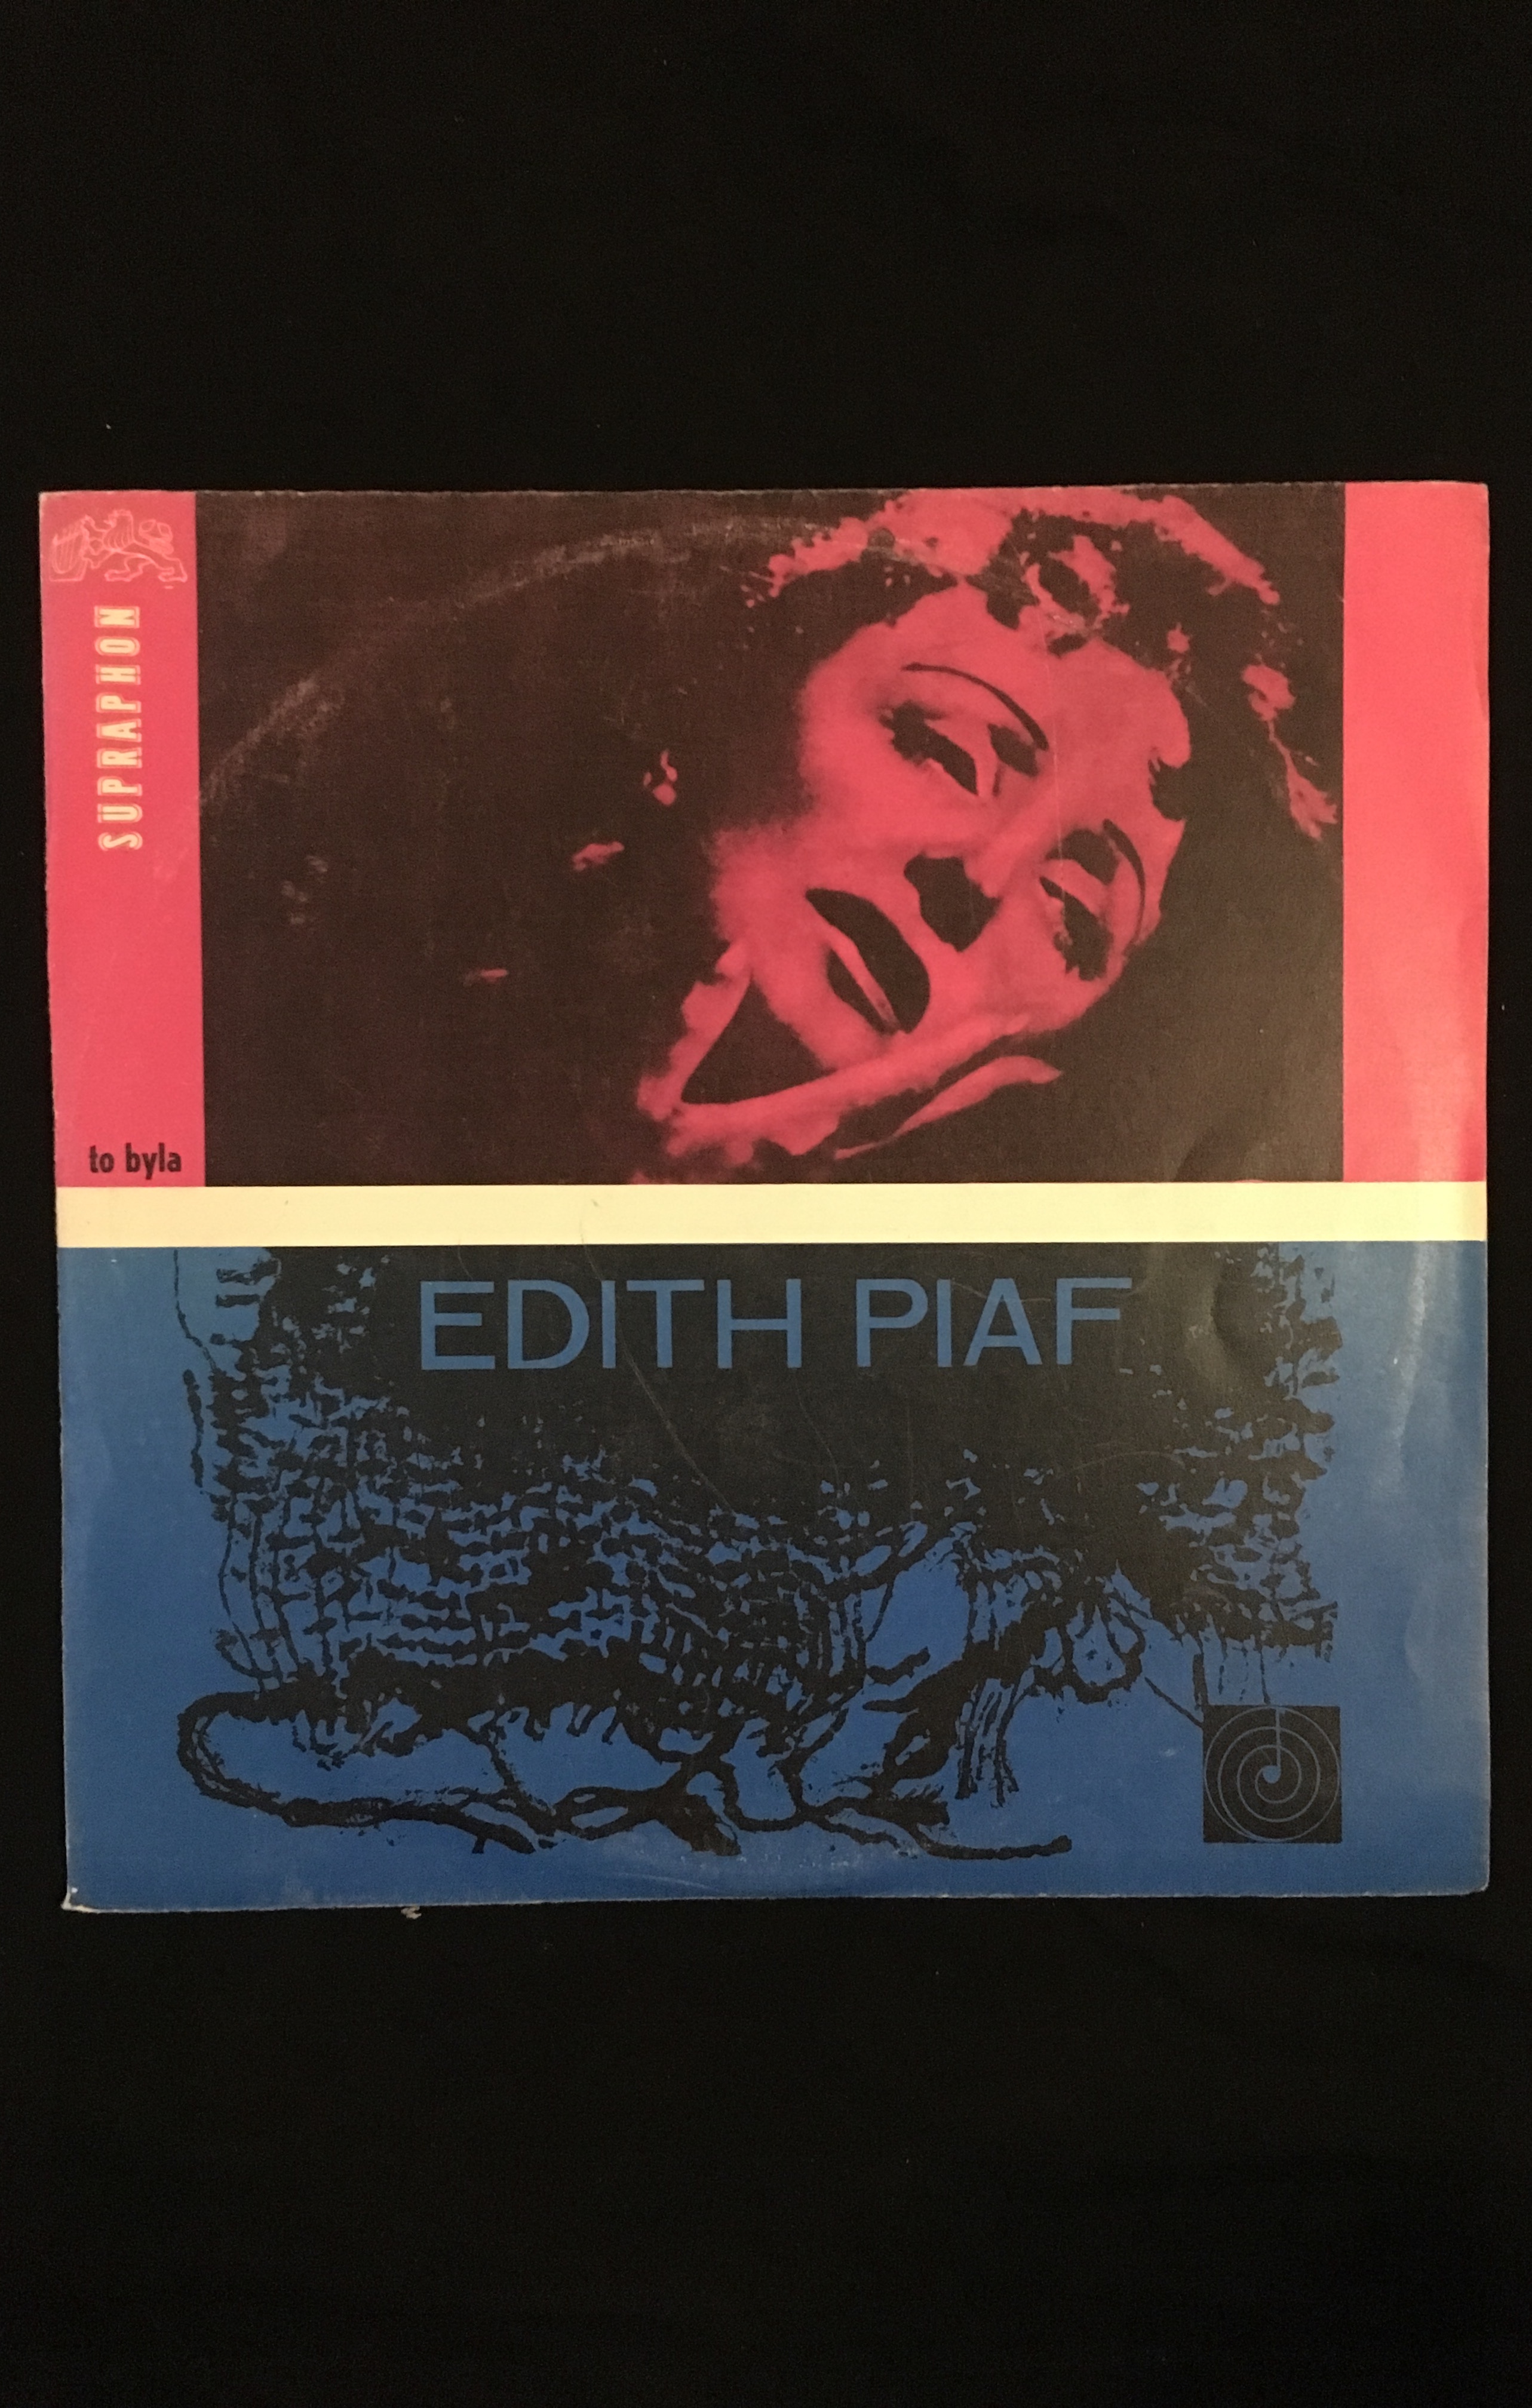 To byla Edith Piaf